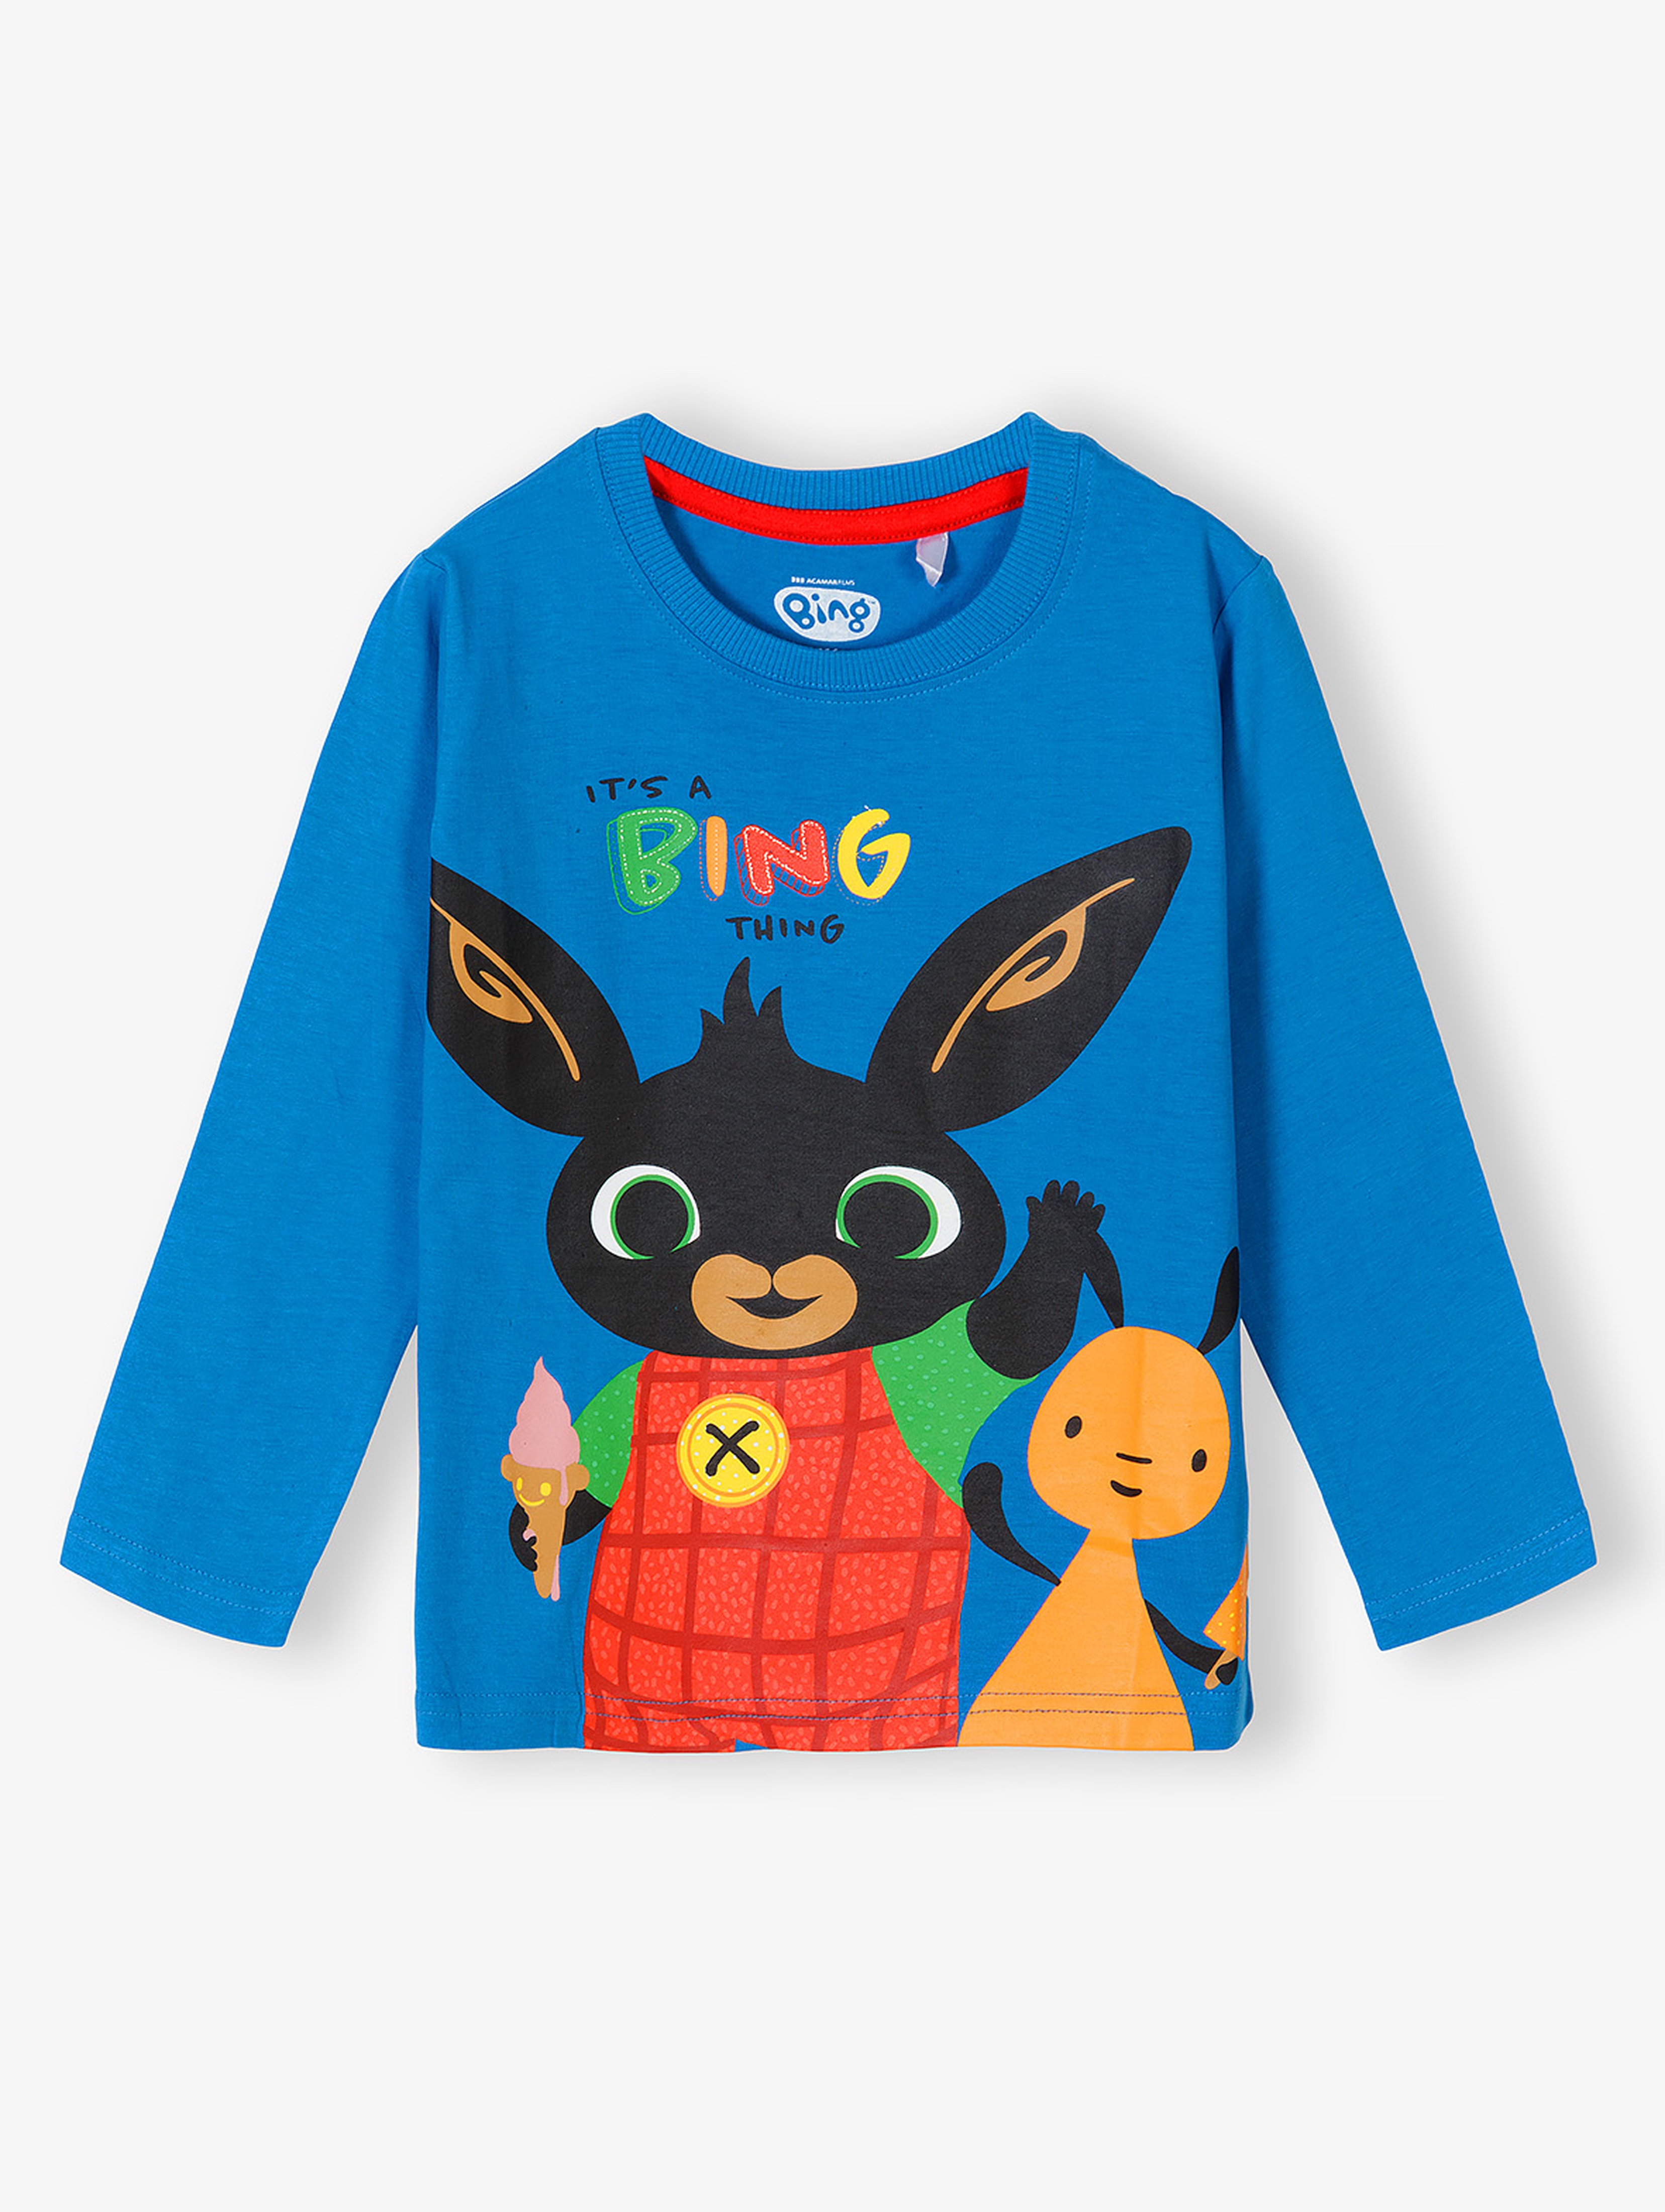 Bing - niebieska bluzka bawełniana dla przedszkolaka